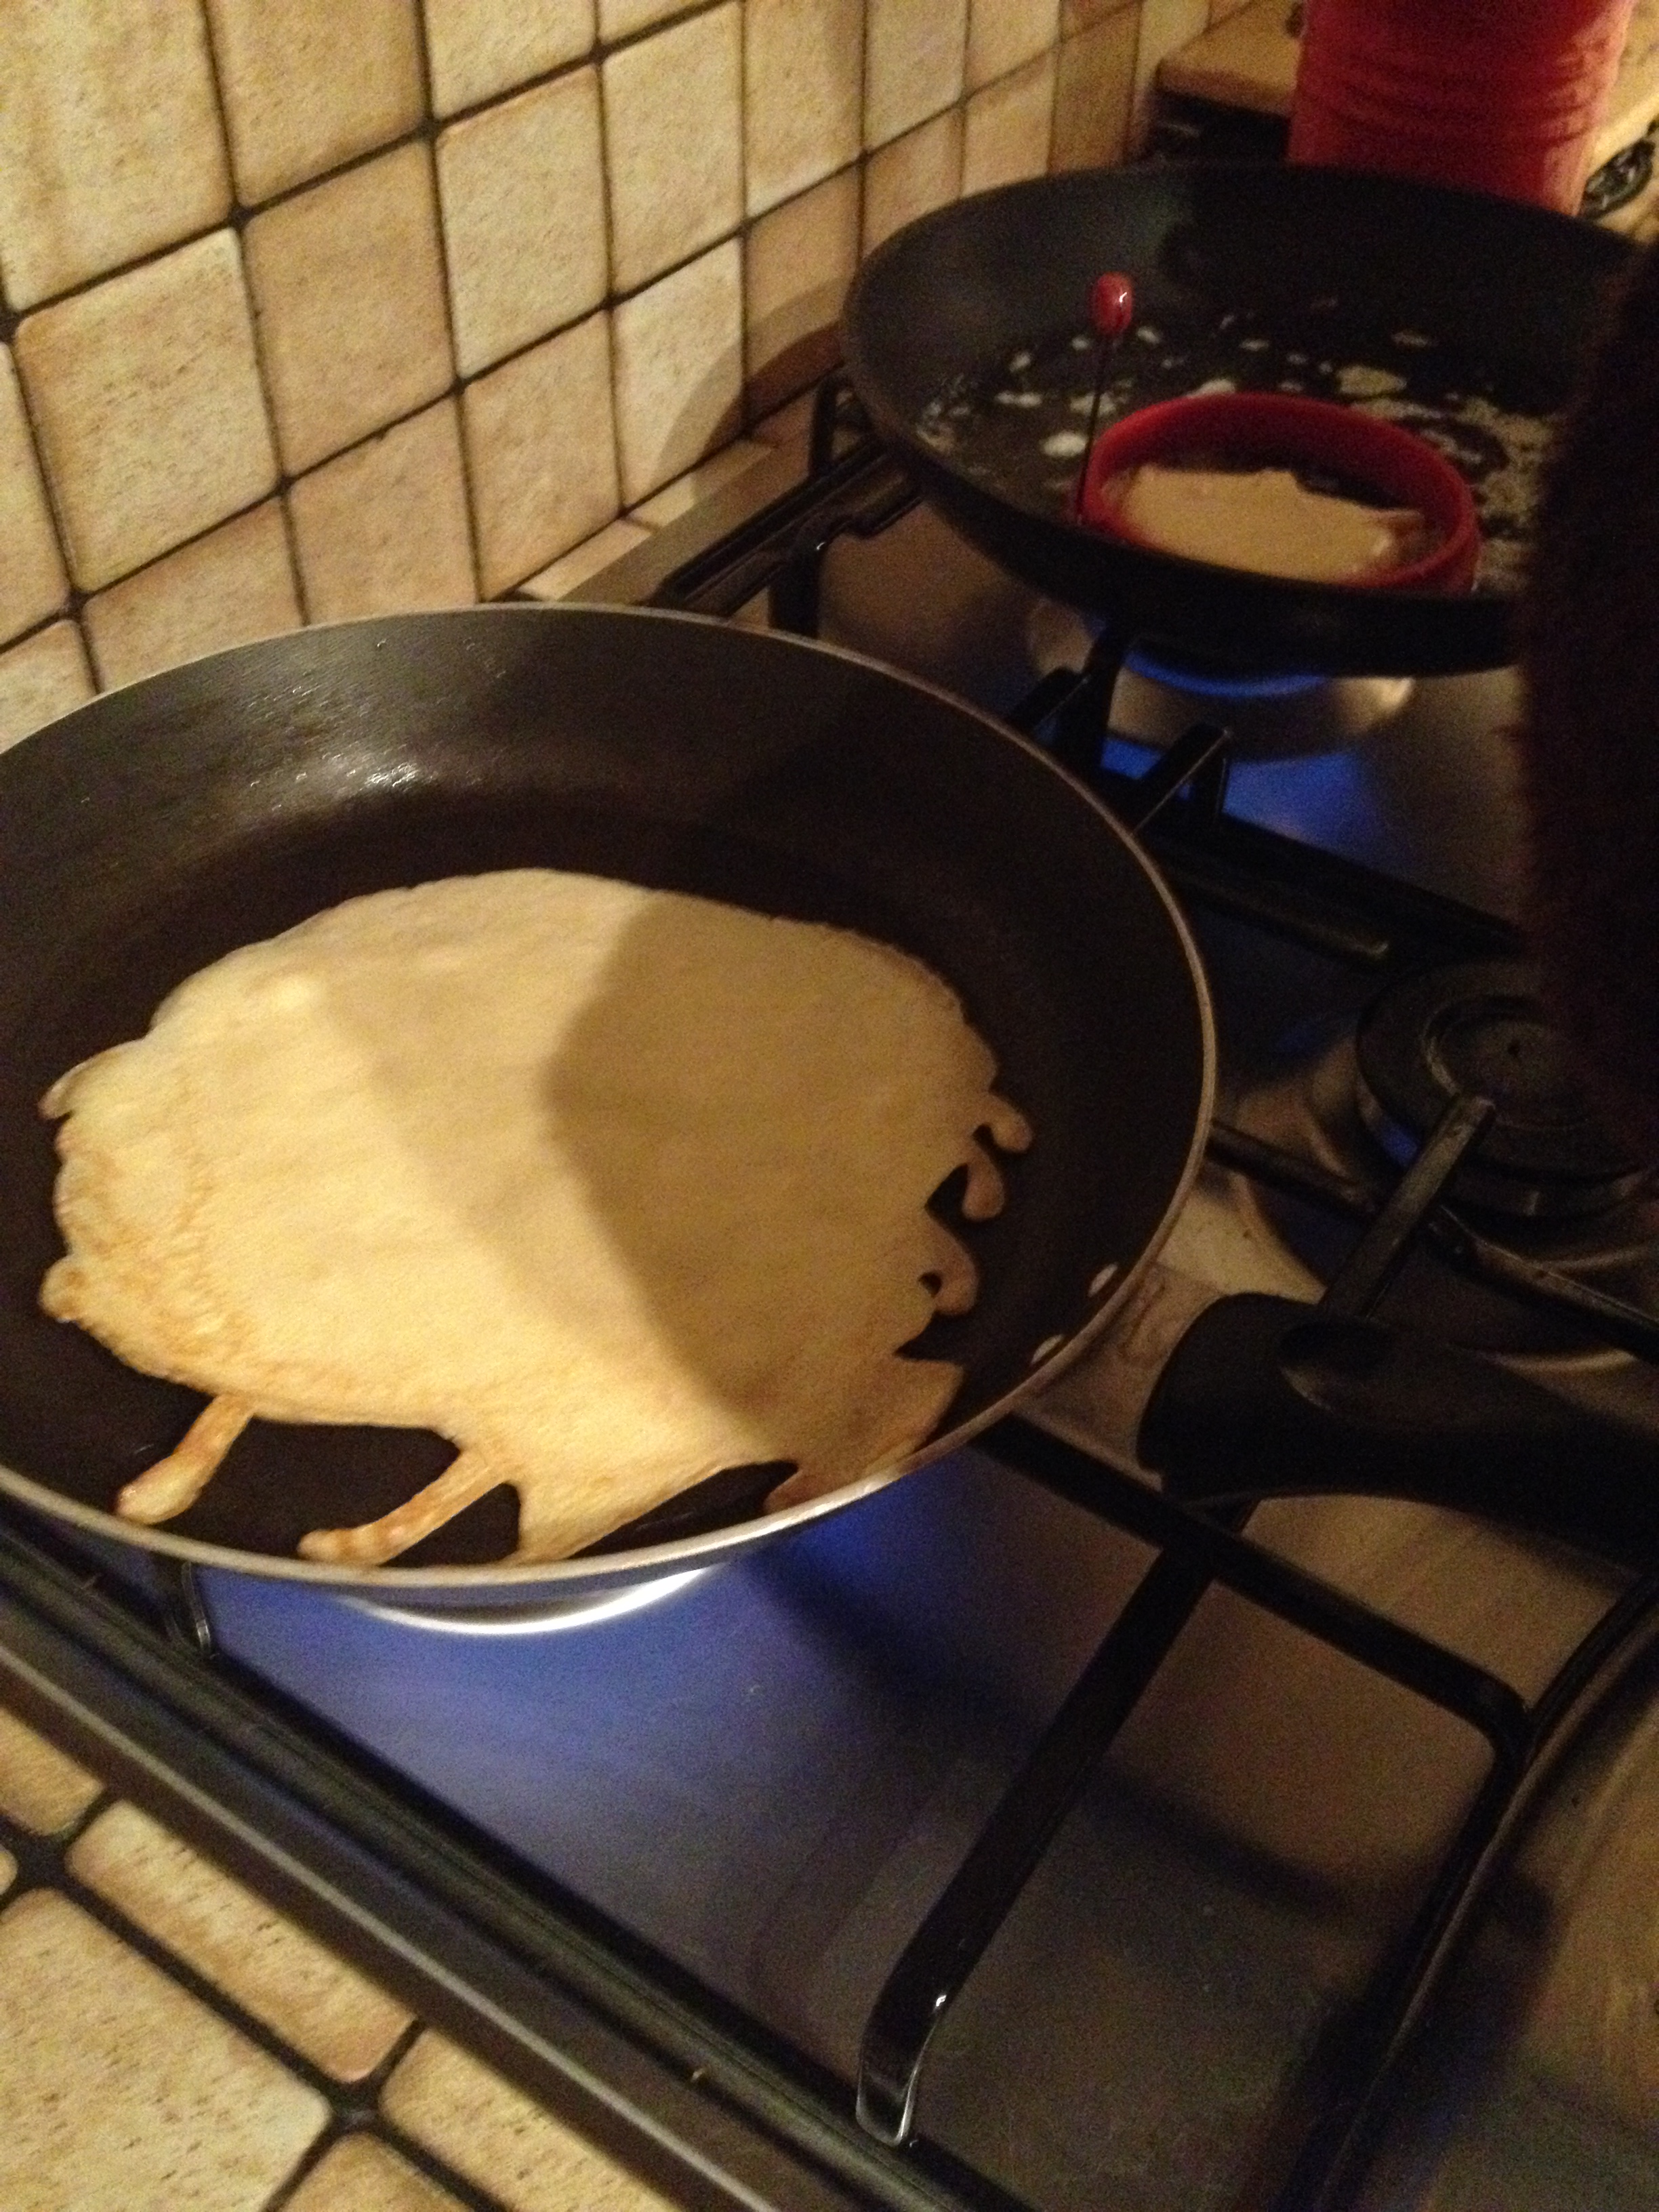 Pancake batter cooking